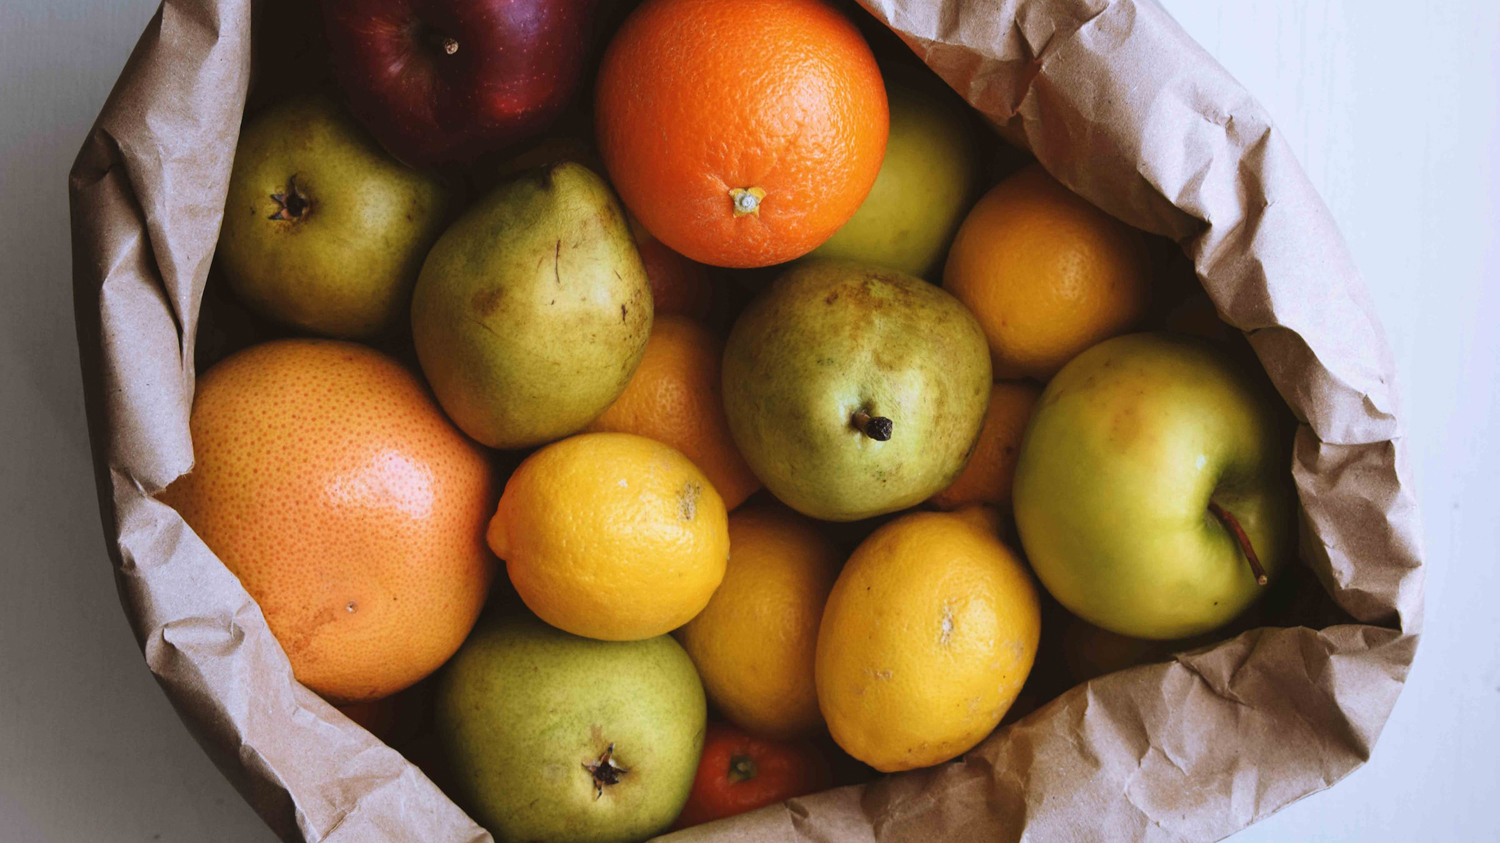 säck med äpplen, päron och andra frukter